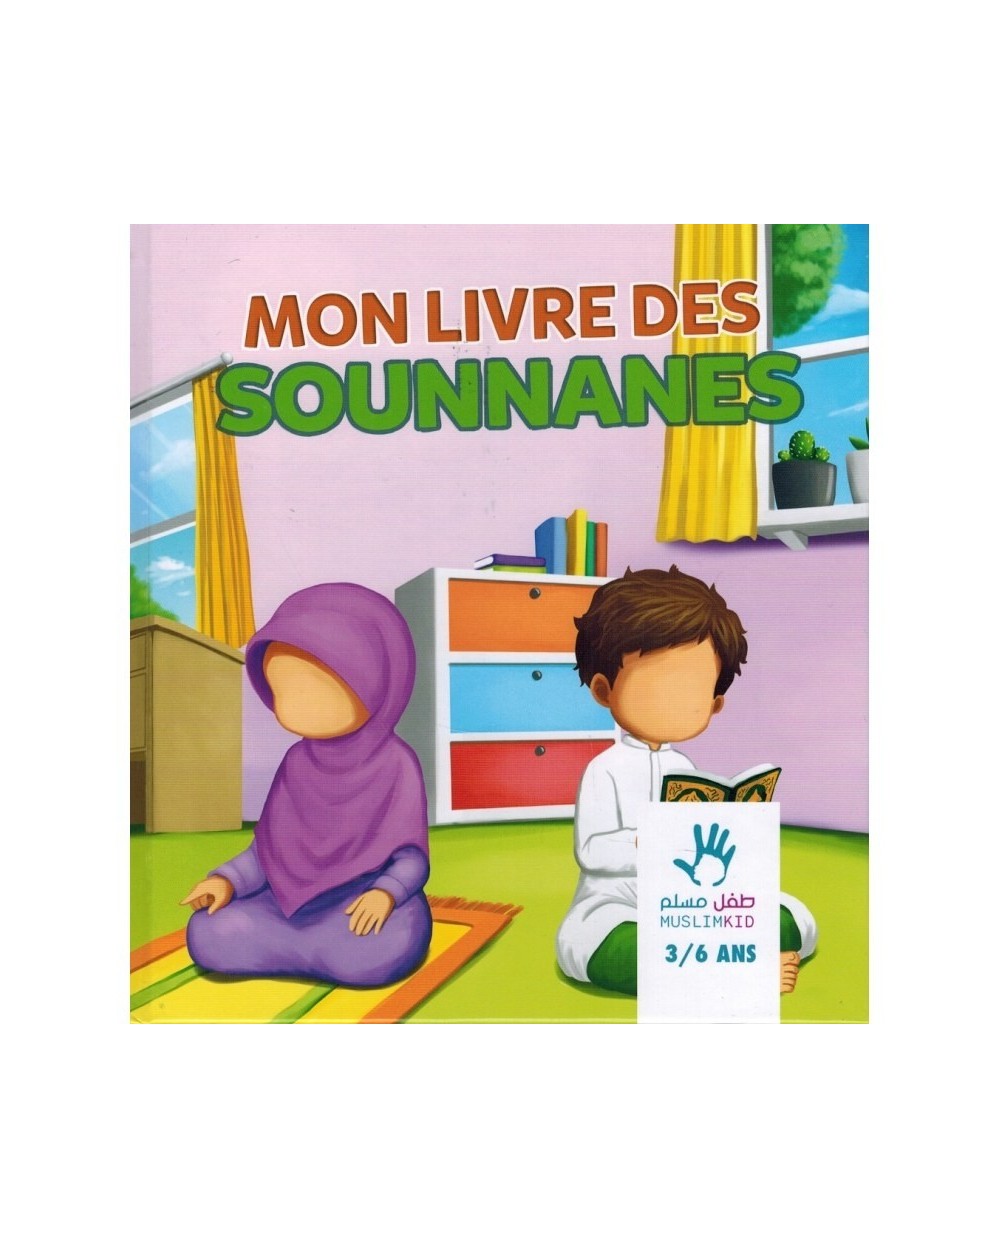 My book of Sounnanes - Muslim kid - 3/6 years old